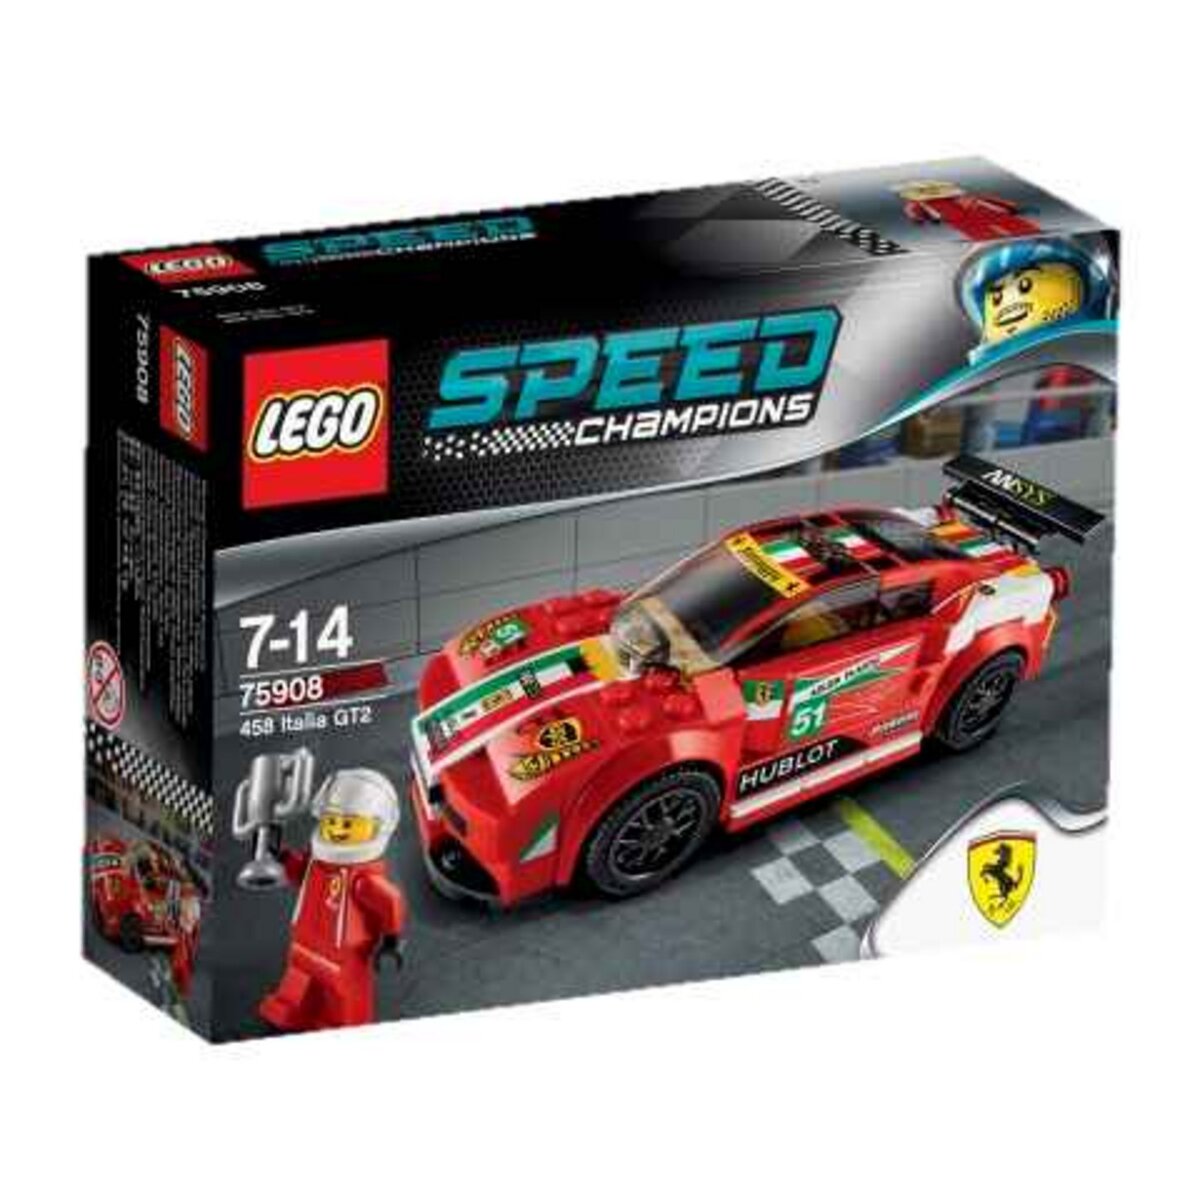 LEGO Speed Champions 75908 - Ferrari 458 Italia GT2